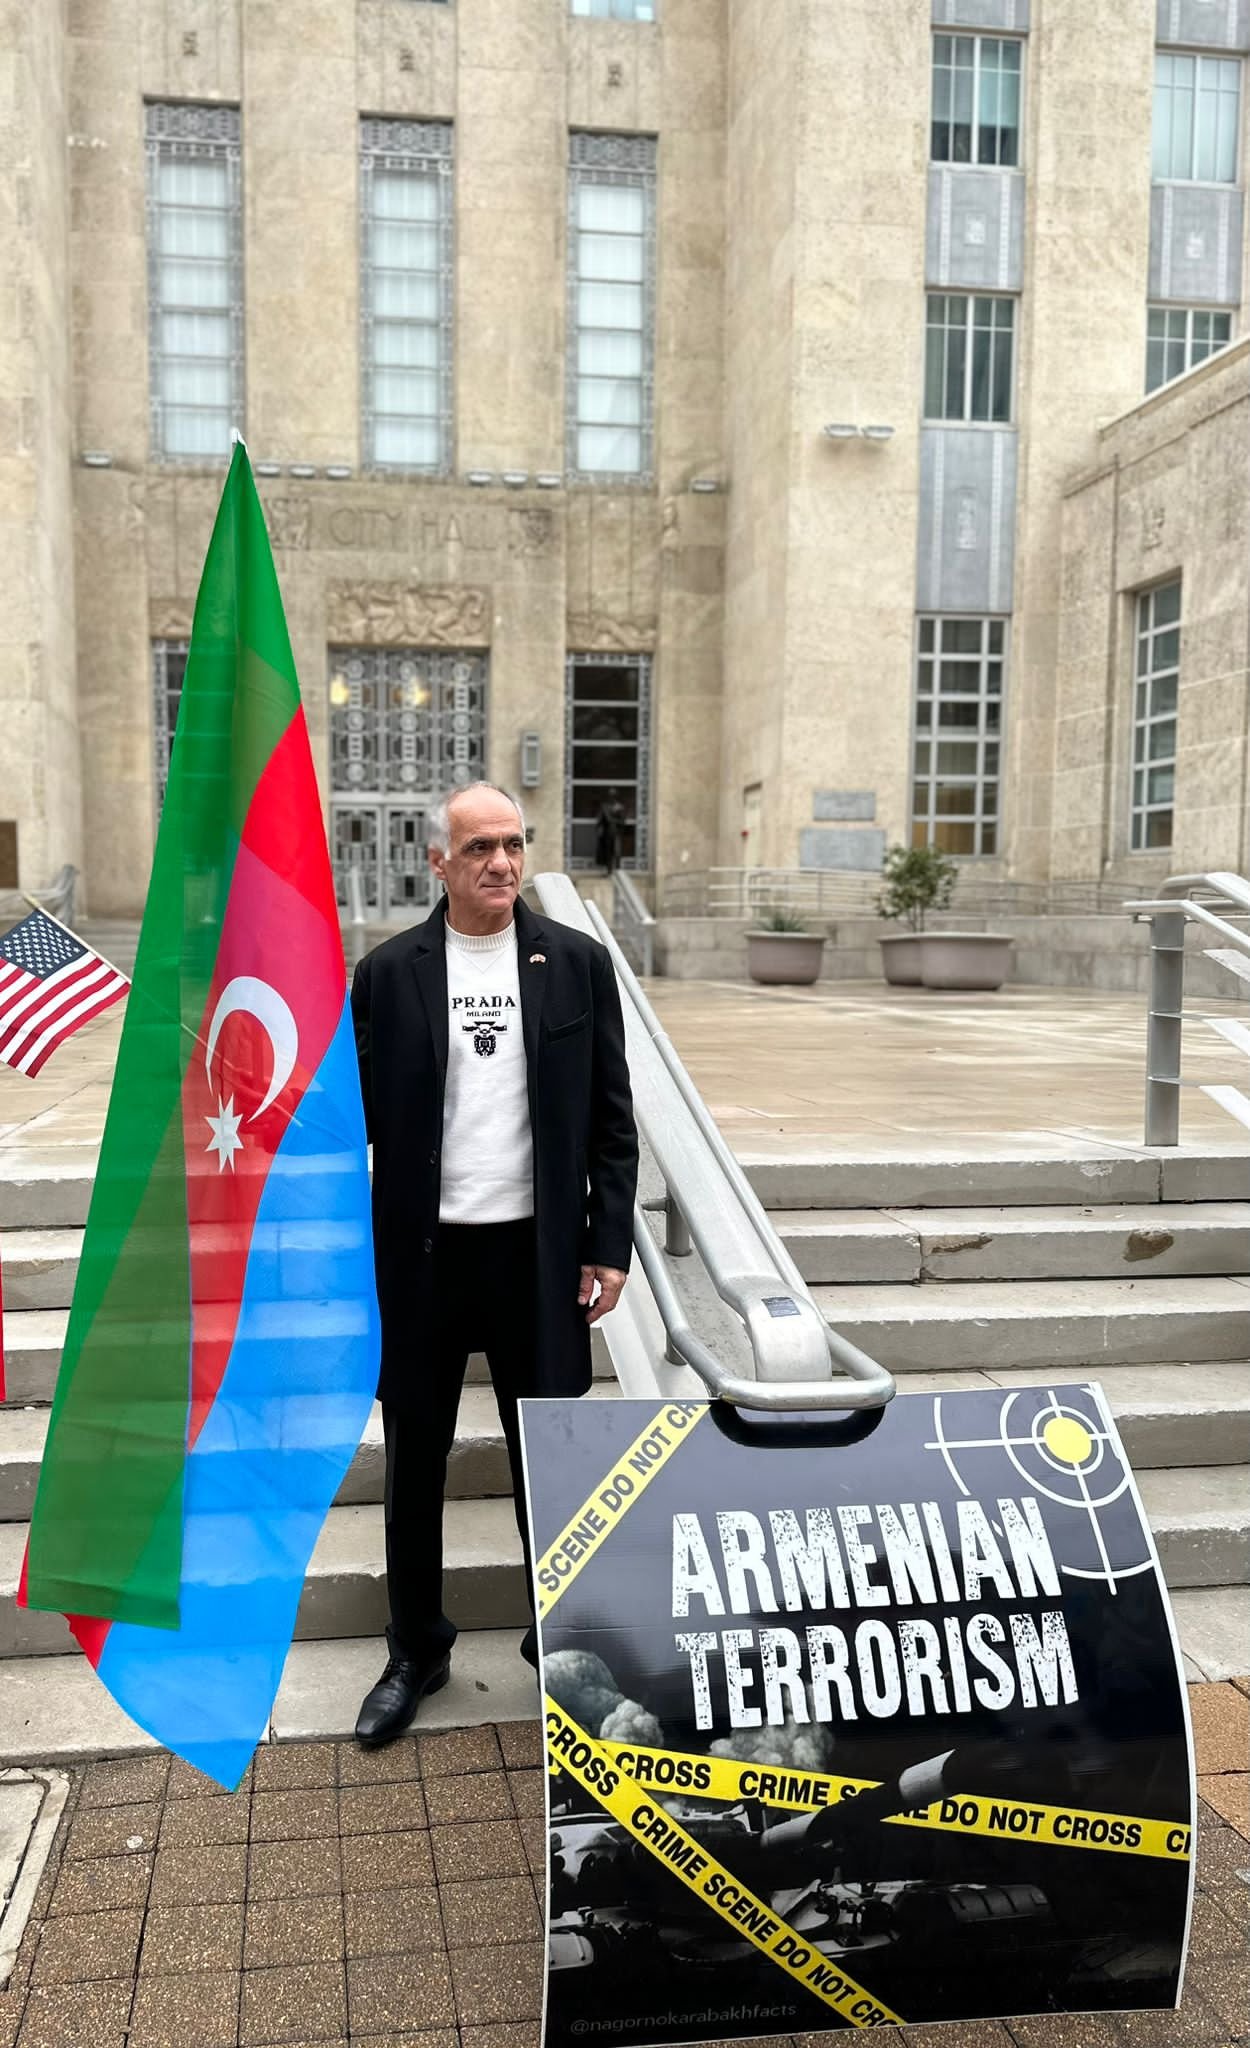 ABŞ-da erməni ekoterroruna etiraz olaraq aksiya keçirilib - FOTOLAR